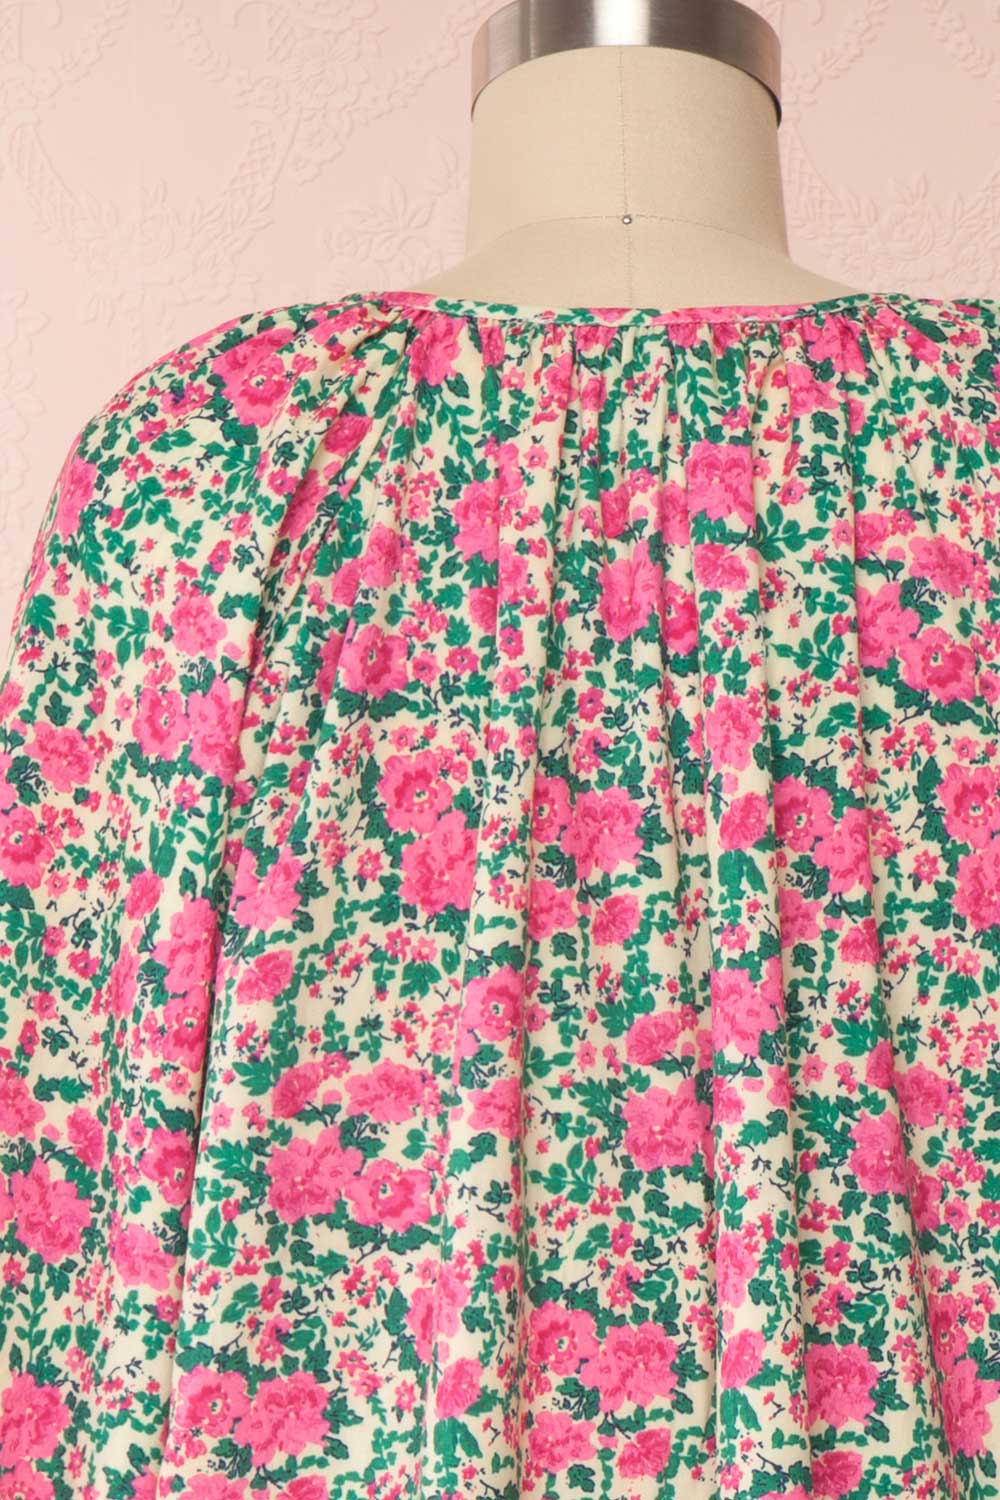 Oxomoco Pink & Green Floral Short Dress | Boutique 1861 back close up